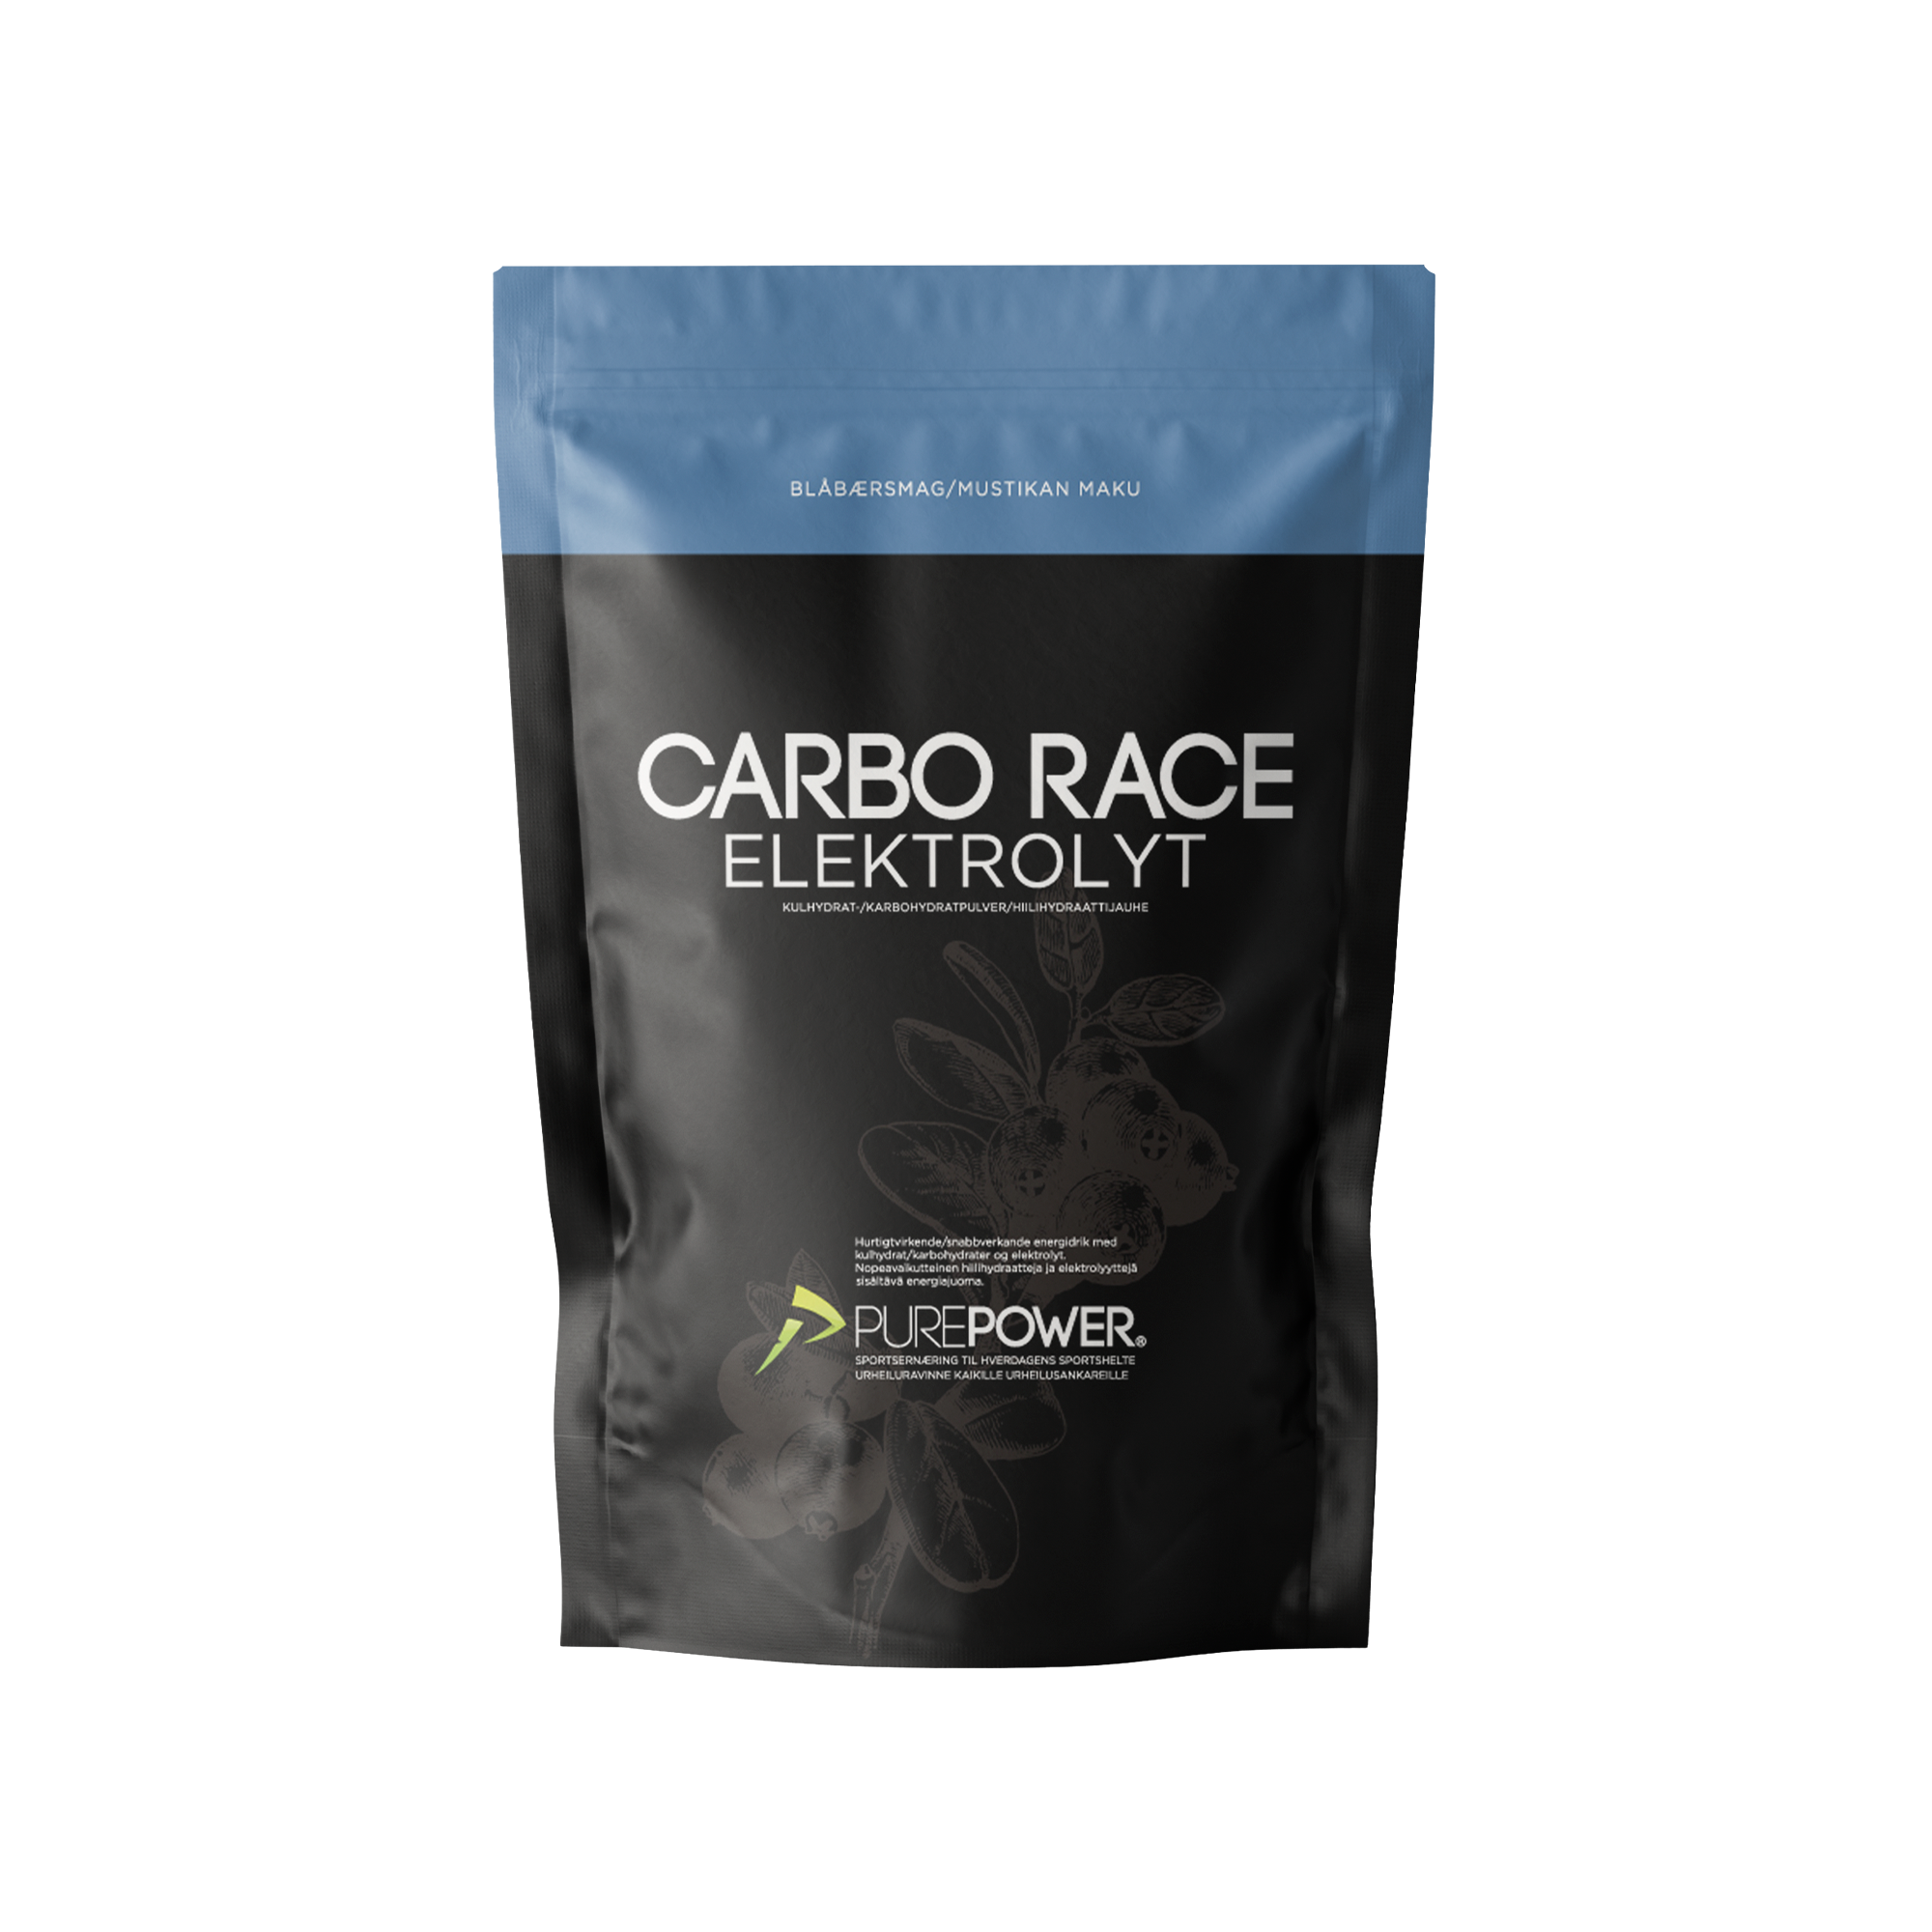 Billede af Carbo Race Elektrolyt Blåbær 1 kg hos PurePower